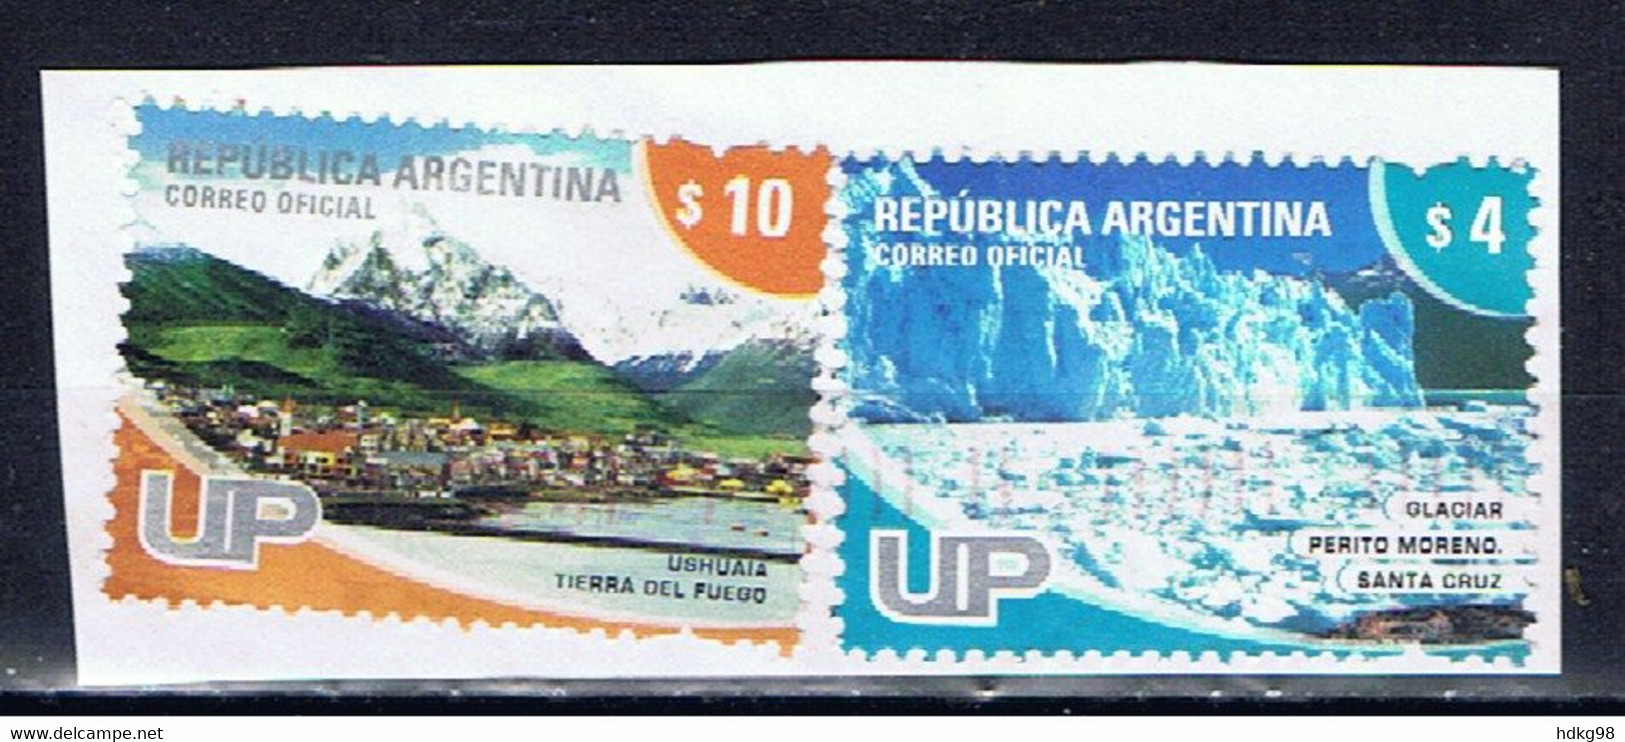 RA+ Argentinien 2005 2008 Mi 3012 3230 Gletscher, Ushuaia - Usados